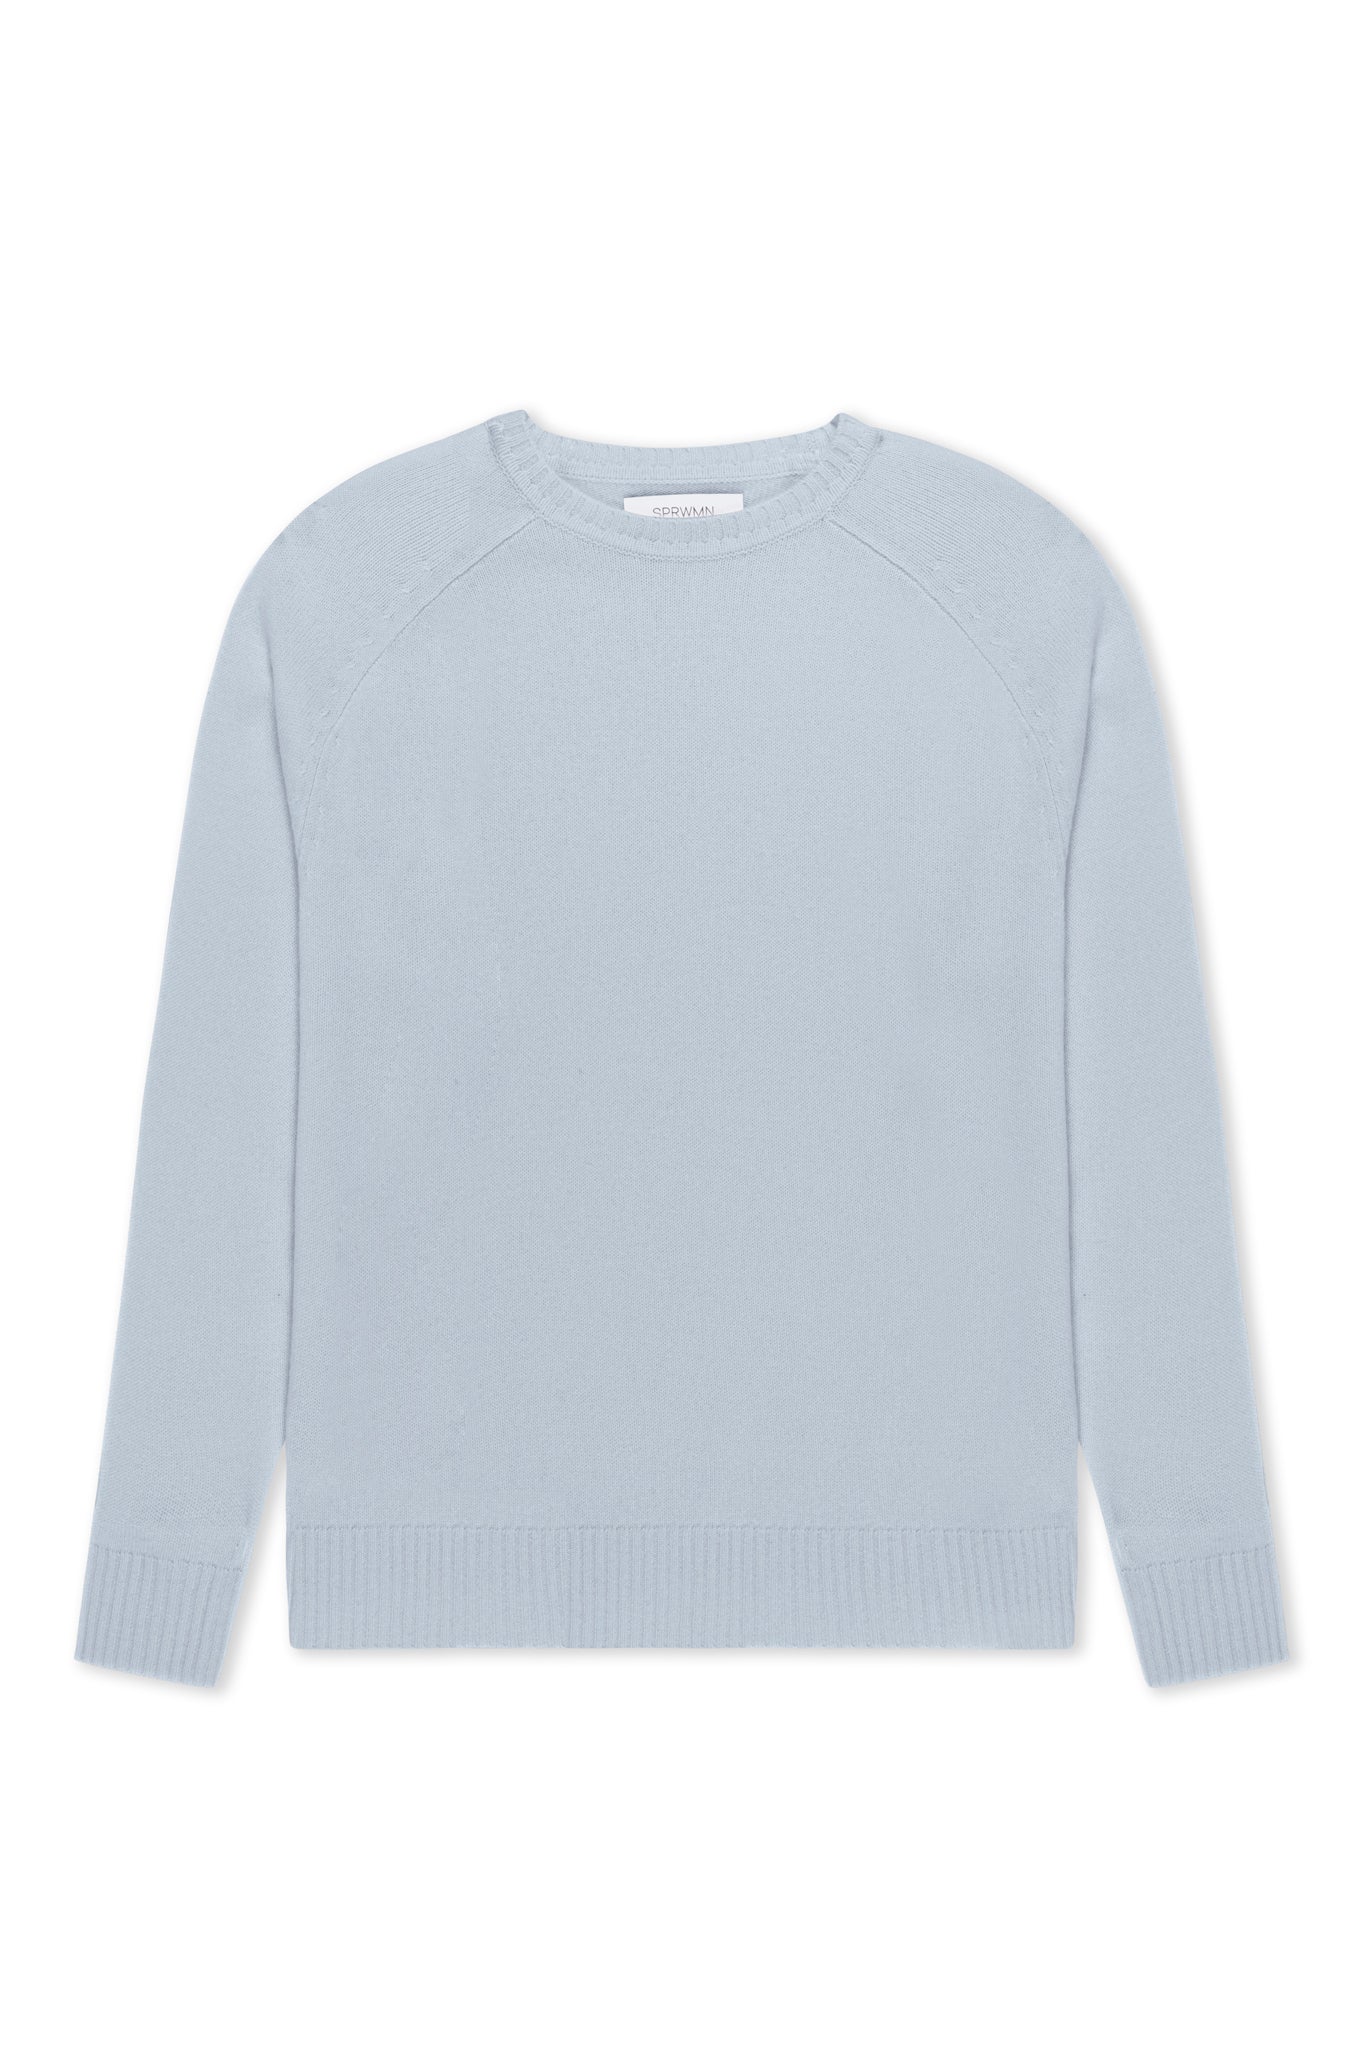 Baby Blue Cashmere Boyfriend Sweater